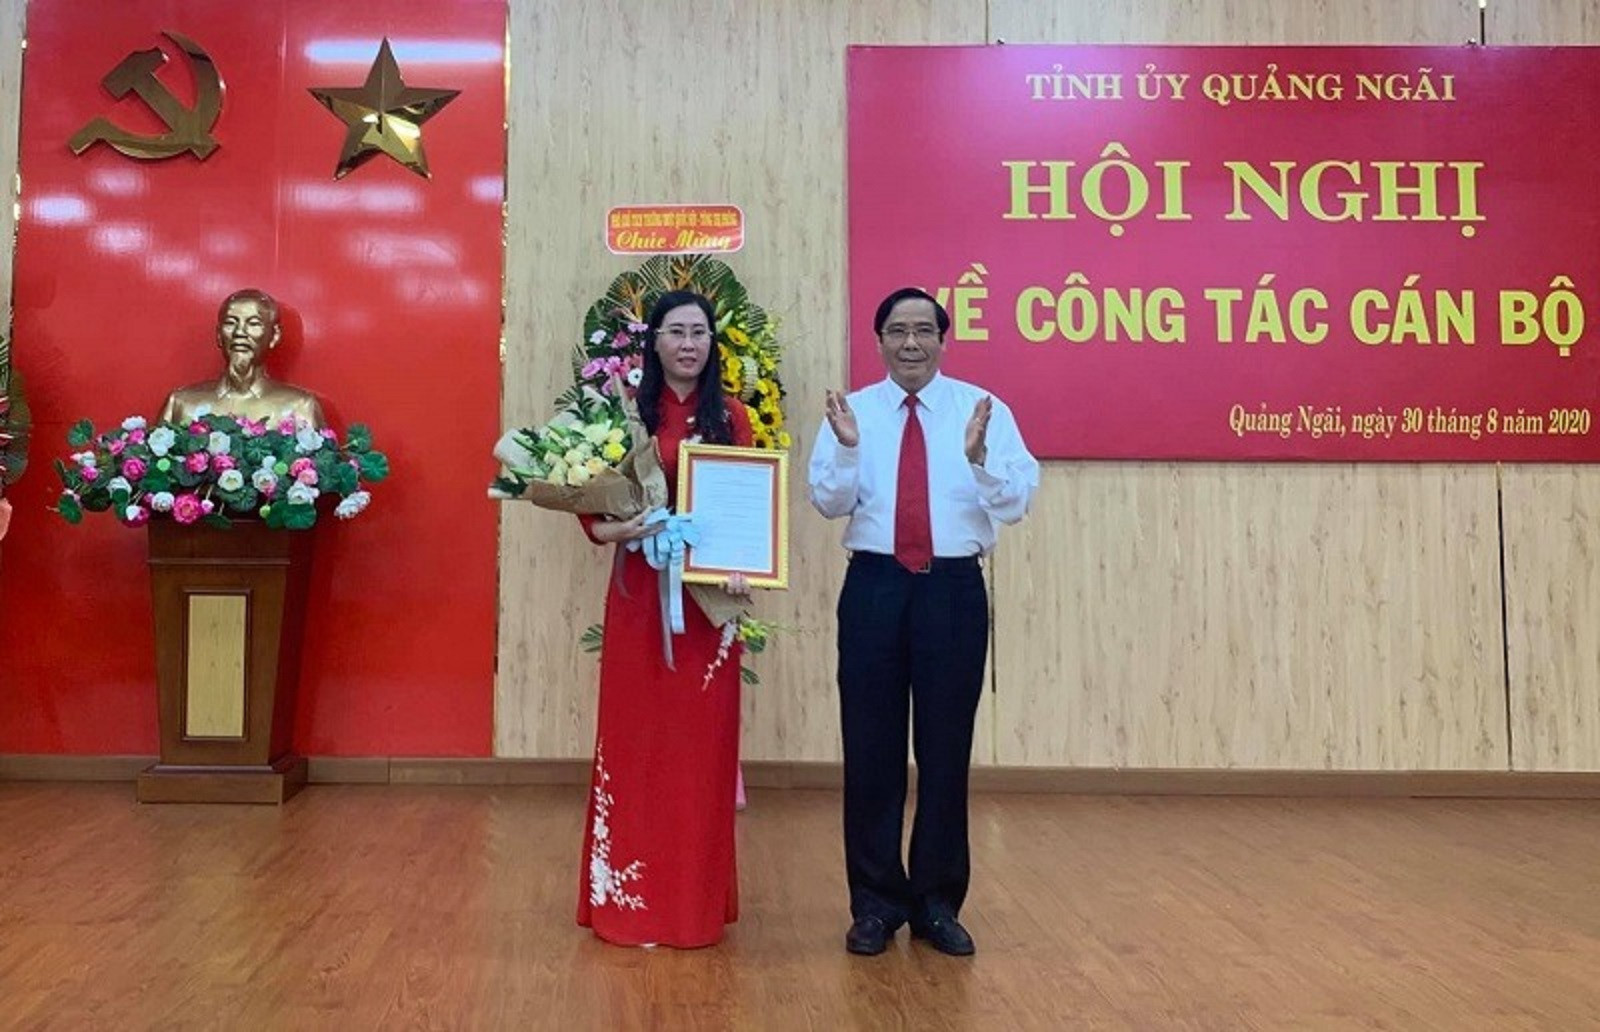 Trao quyết định chuẩn y bà Bùi Thị Quỳnh Vân giữ chức Bí thư Tỉnh ủy Quảng Ngãi.